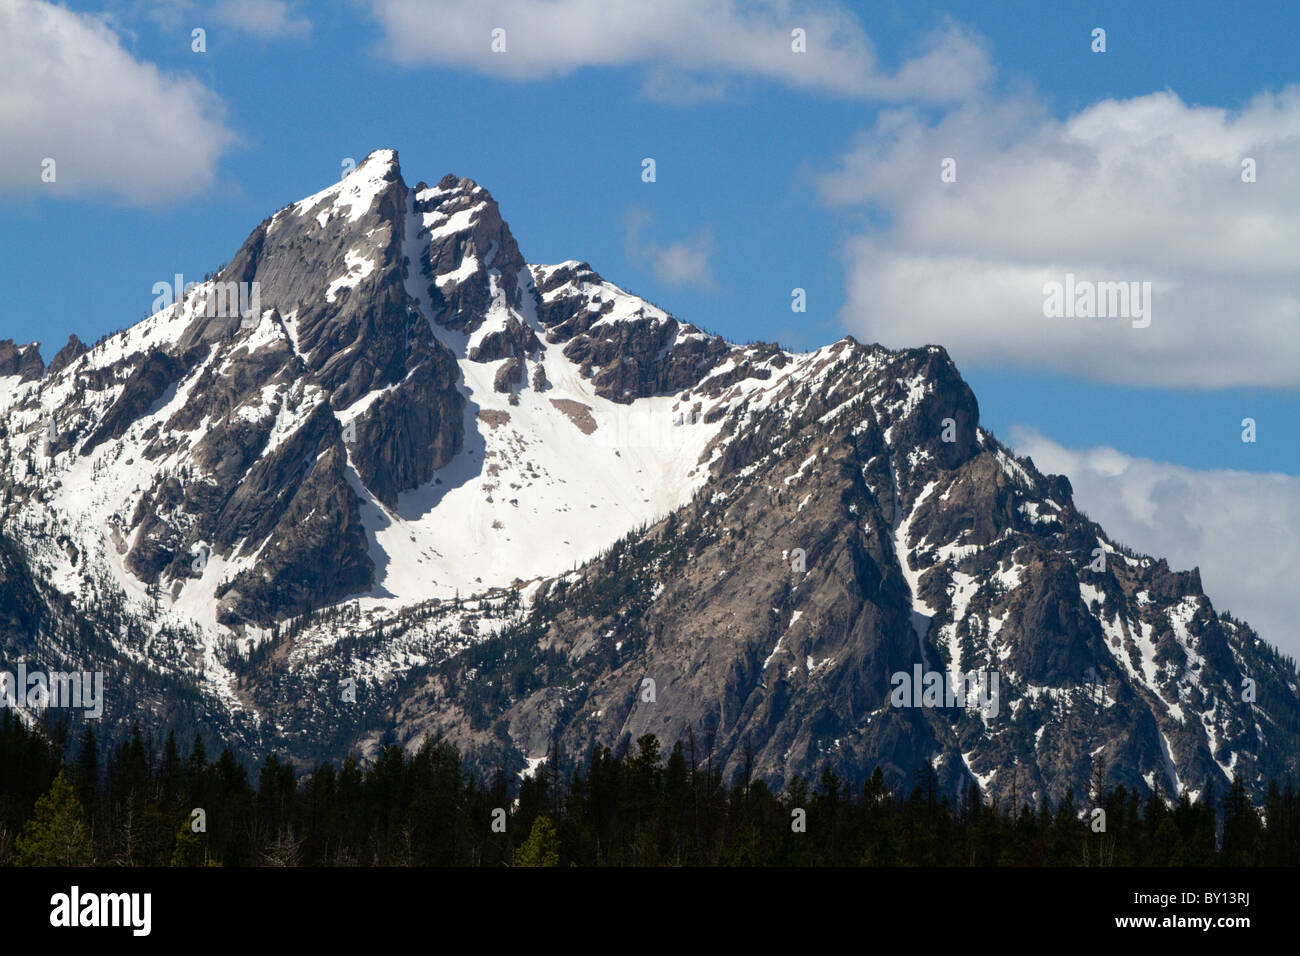 McGowan Peak in the Sawtooth Mountain Range near Stanley, Idaho, USA. Stock Photo